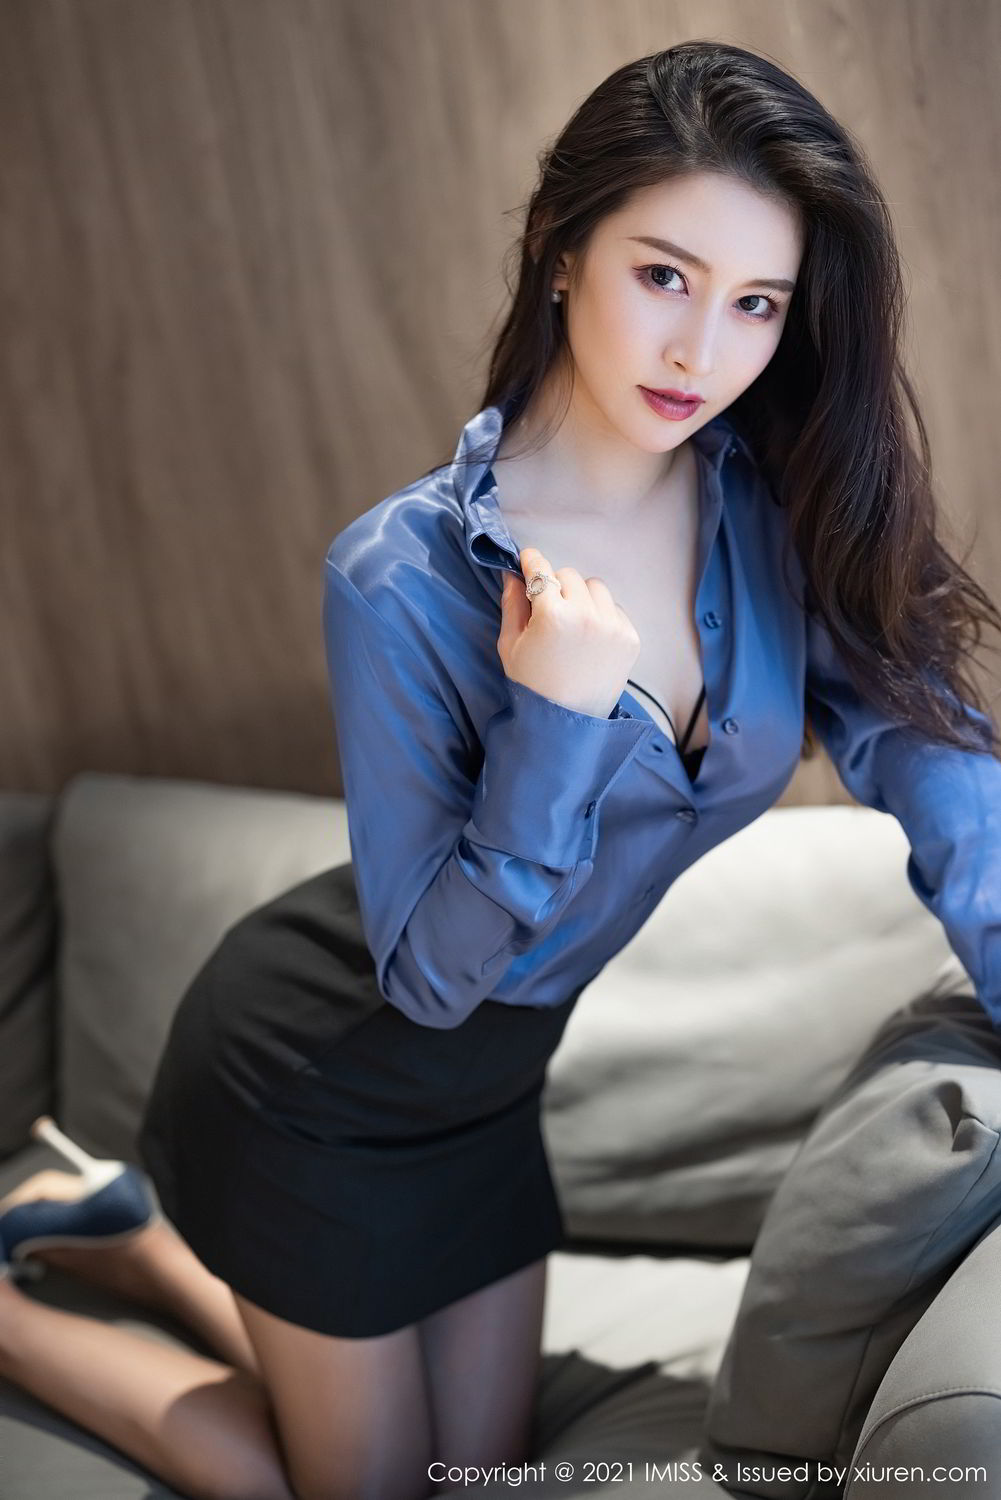 超有气质美女御姐Vanessa紧身蓝衫黑裙职业装穿搭居家沙发妩媚妖娆写真套图图片